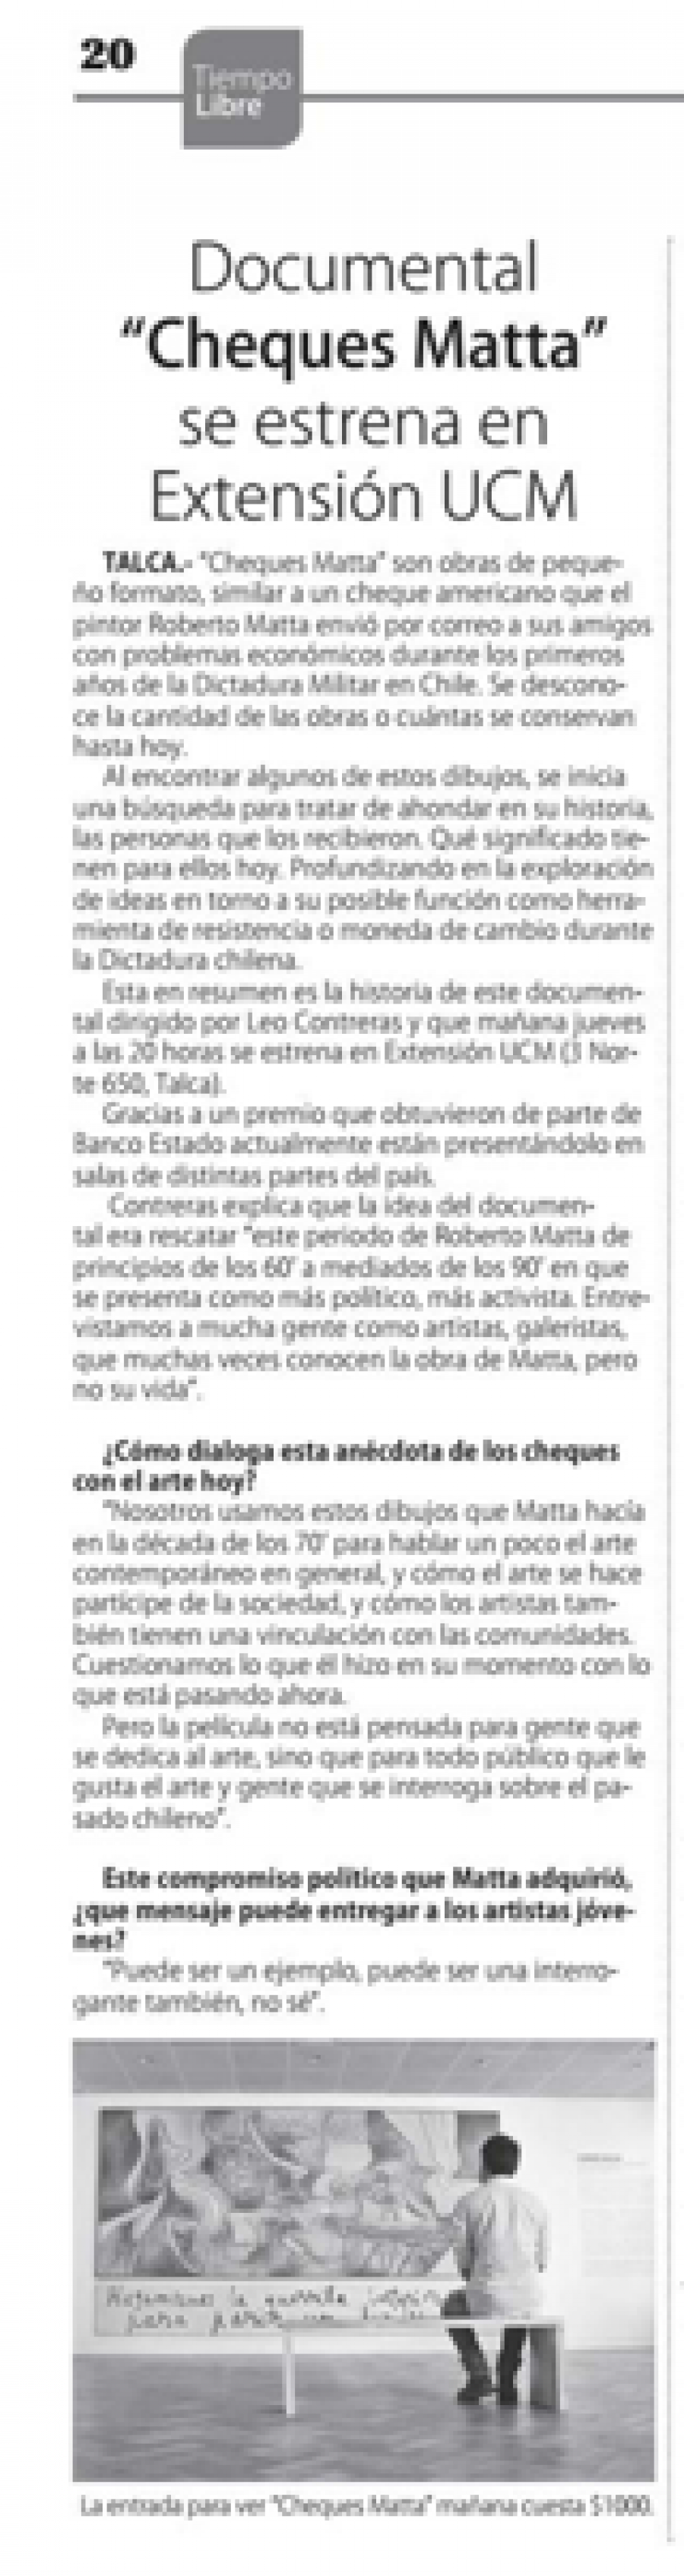 27 de junio en Diario El Centro: “Documental “Cheques Matta” se estrena en Extensión UCM”